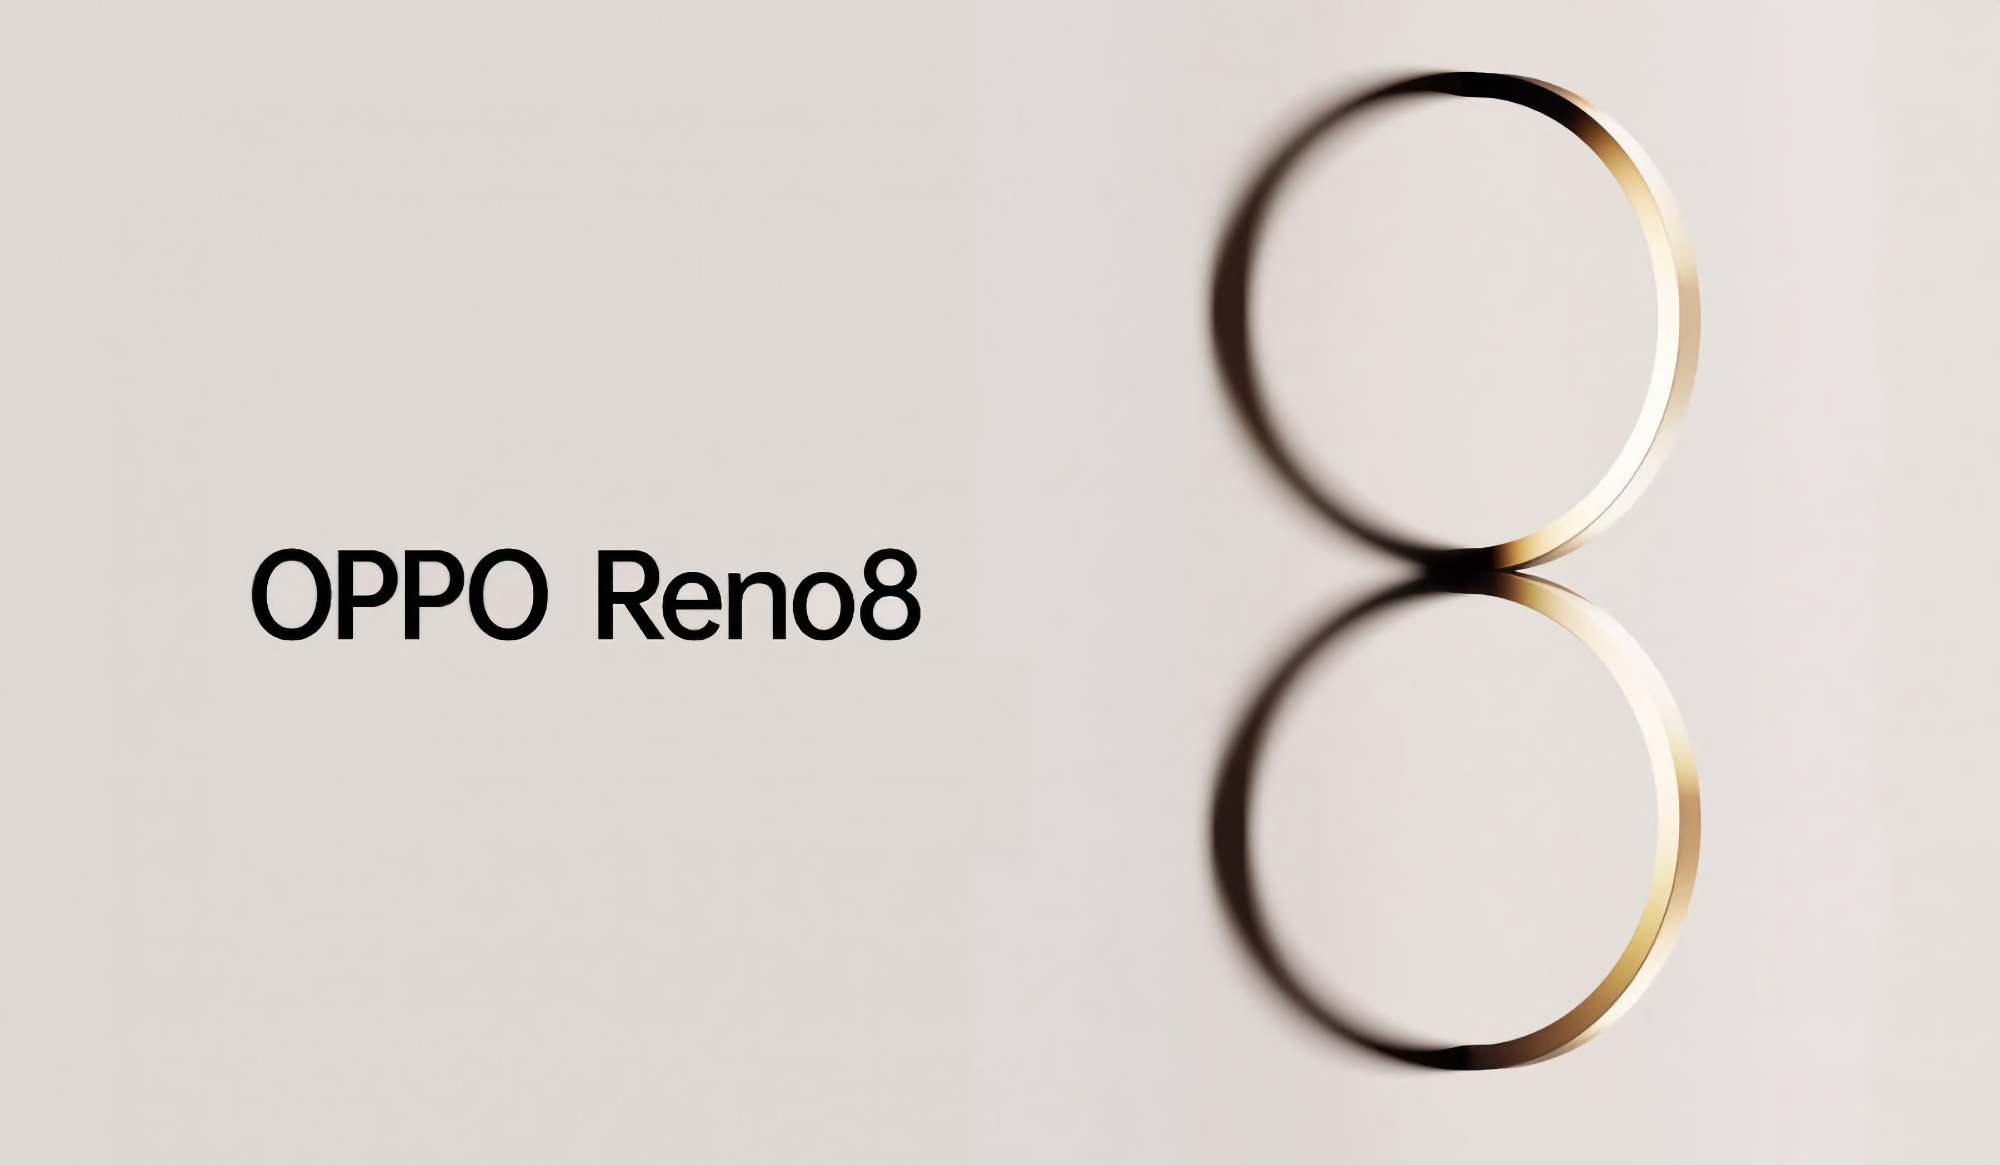 Ufficiale: il 23 maggio verrà presentata la linea di smartphone OPPO Reno 8